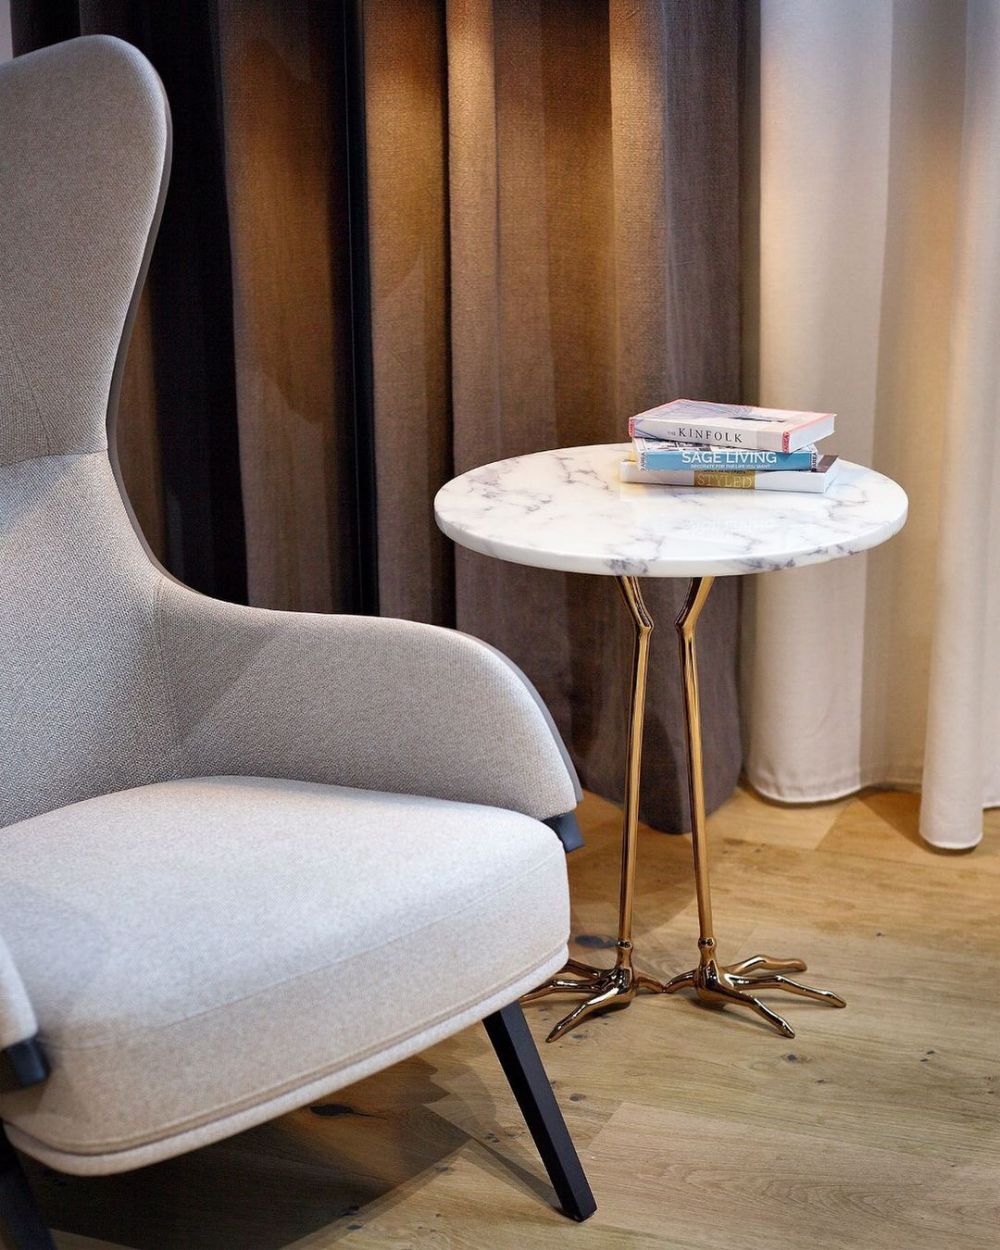 15 Ide Side Table Desain Modern hingga Vintage, Ruangan Jadi Cantik   